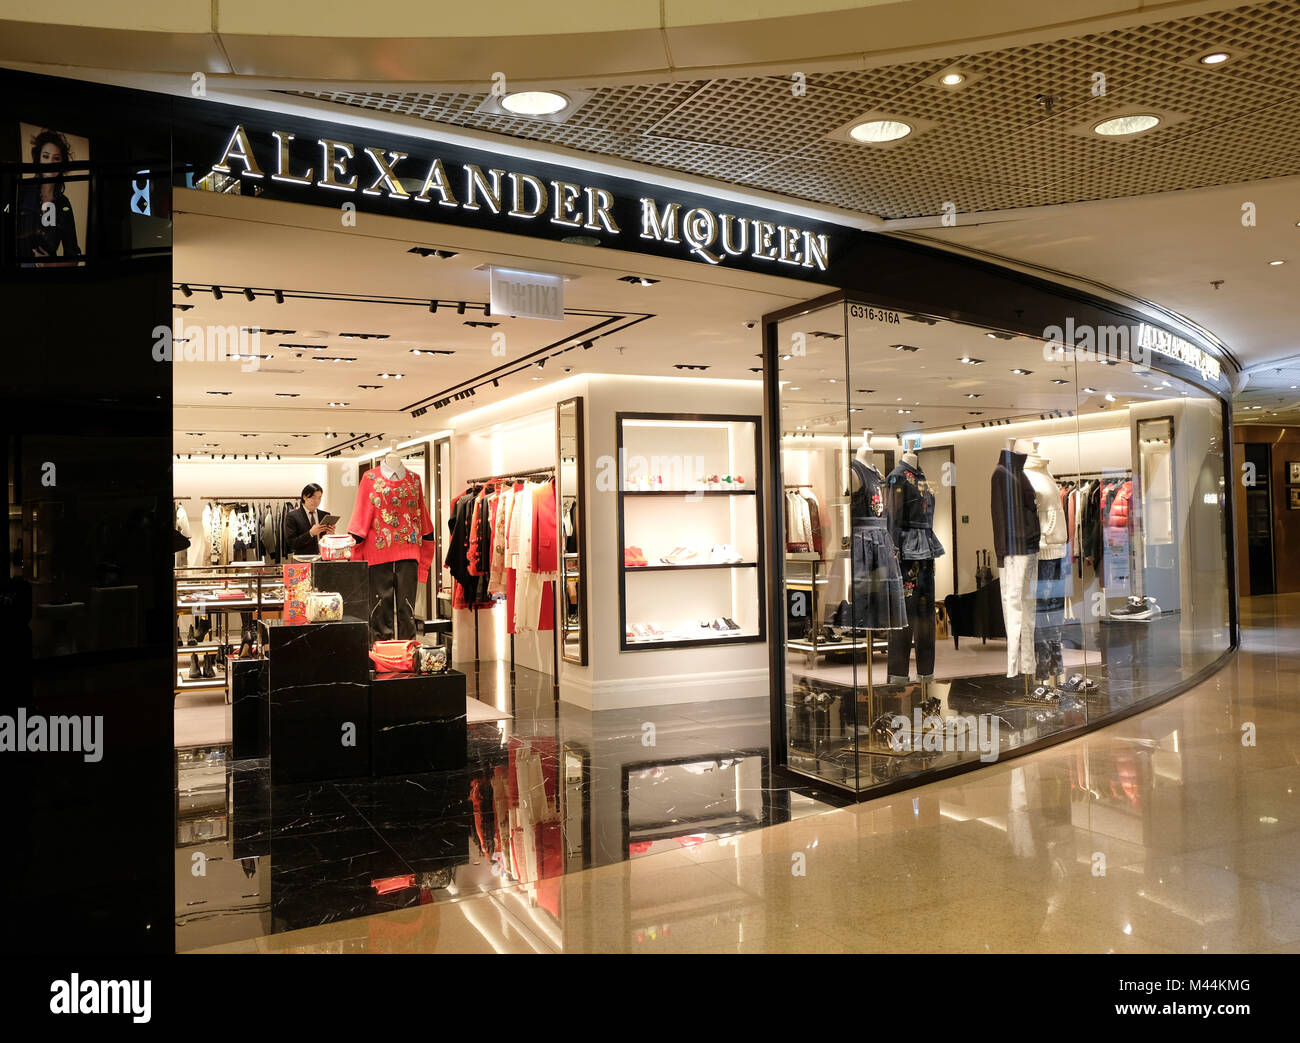 alexander mcqueen store locations